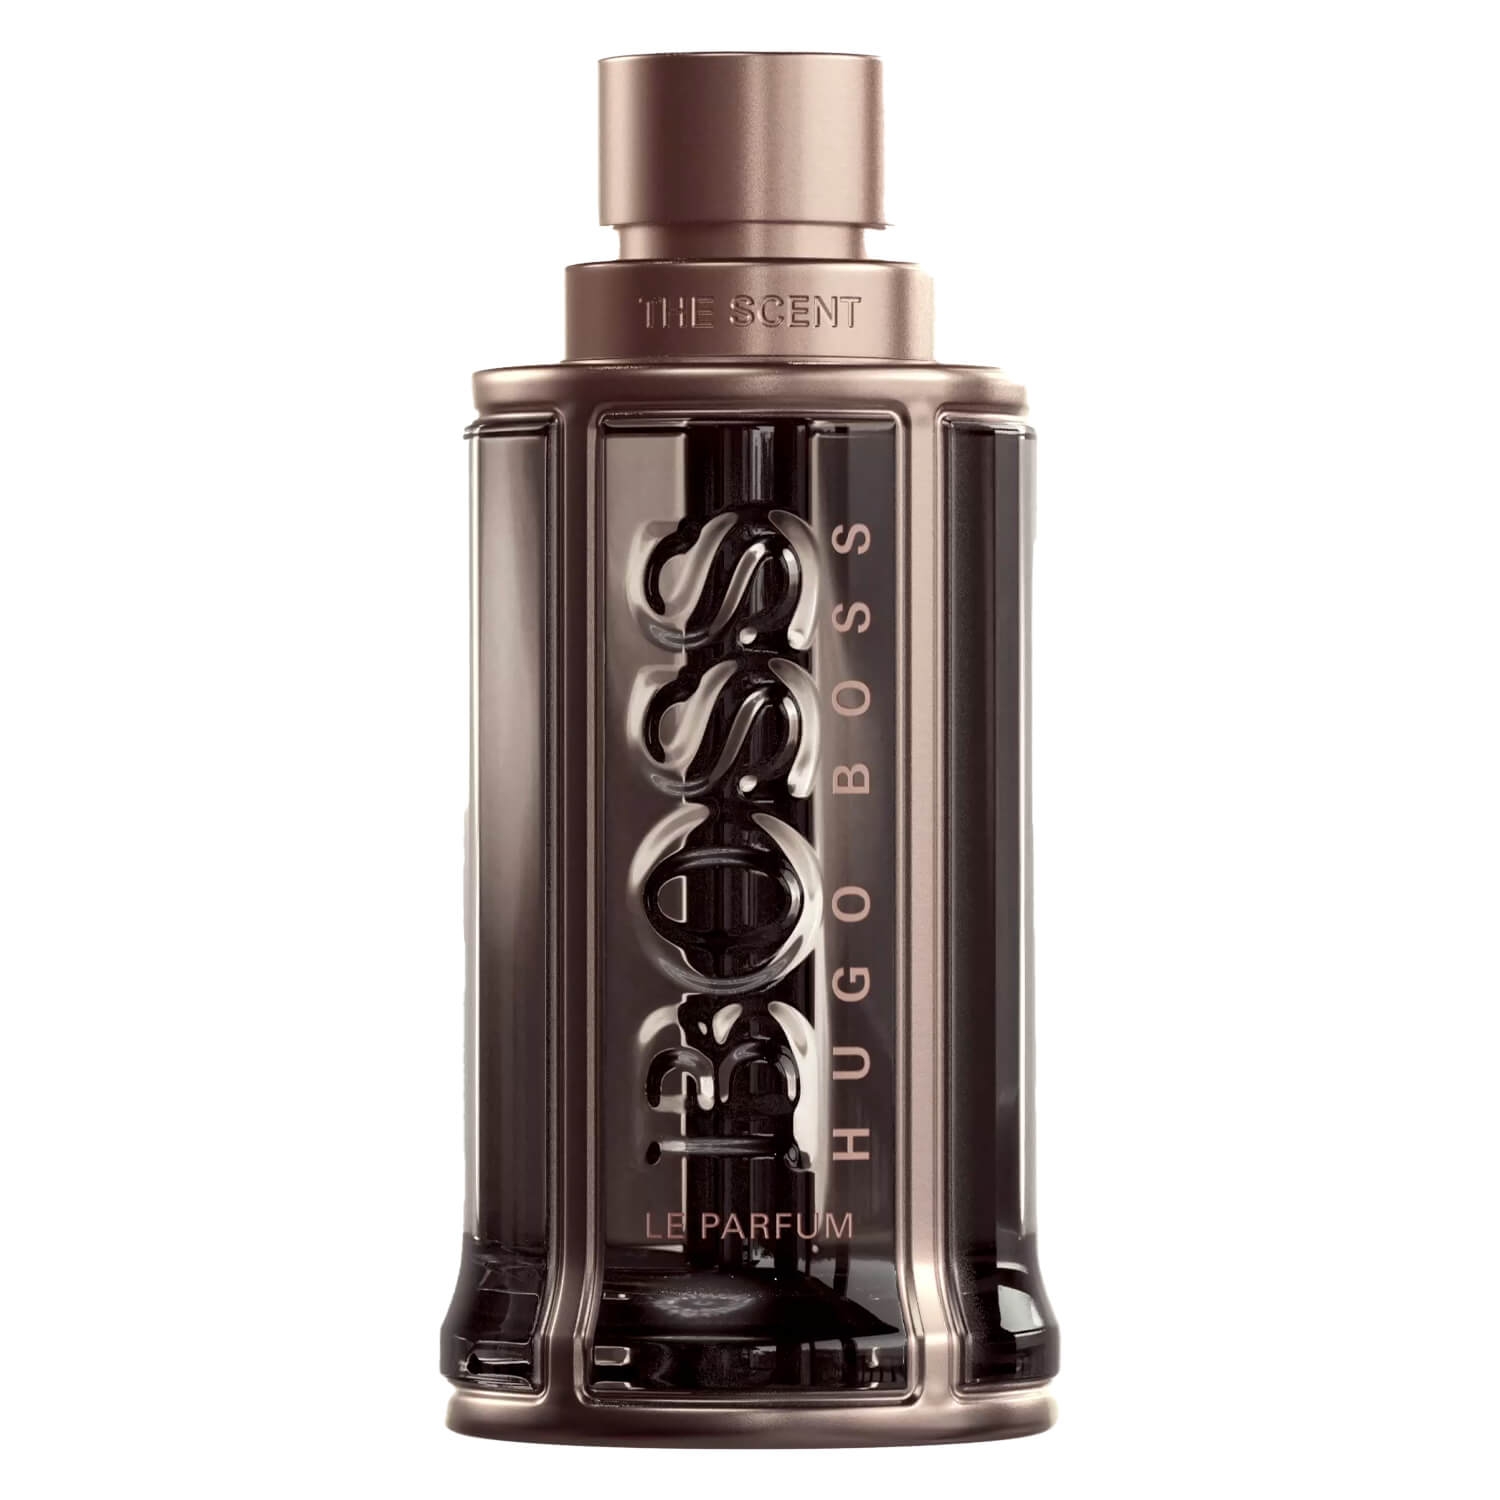 Produktbild von Boss The Scent - Le Parfum for Him